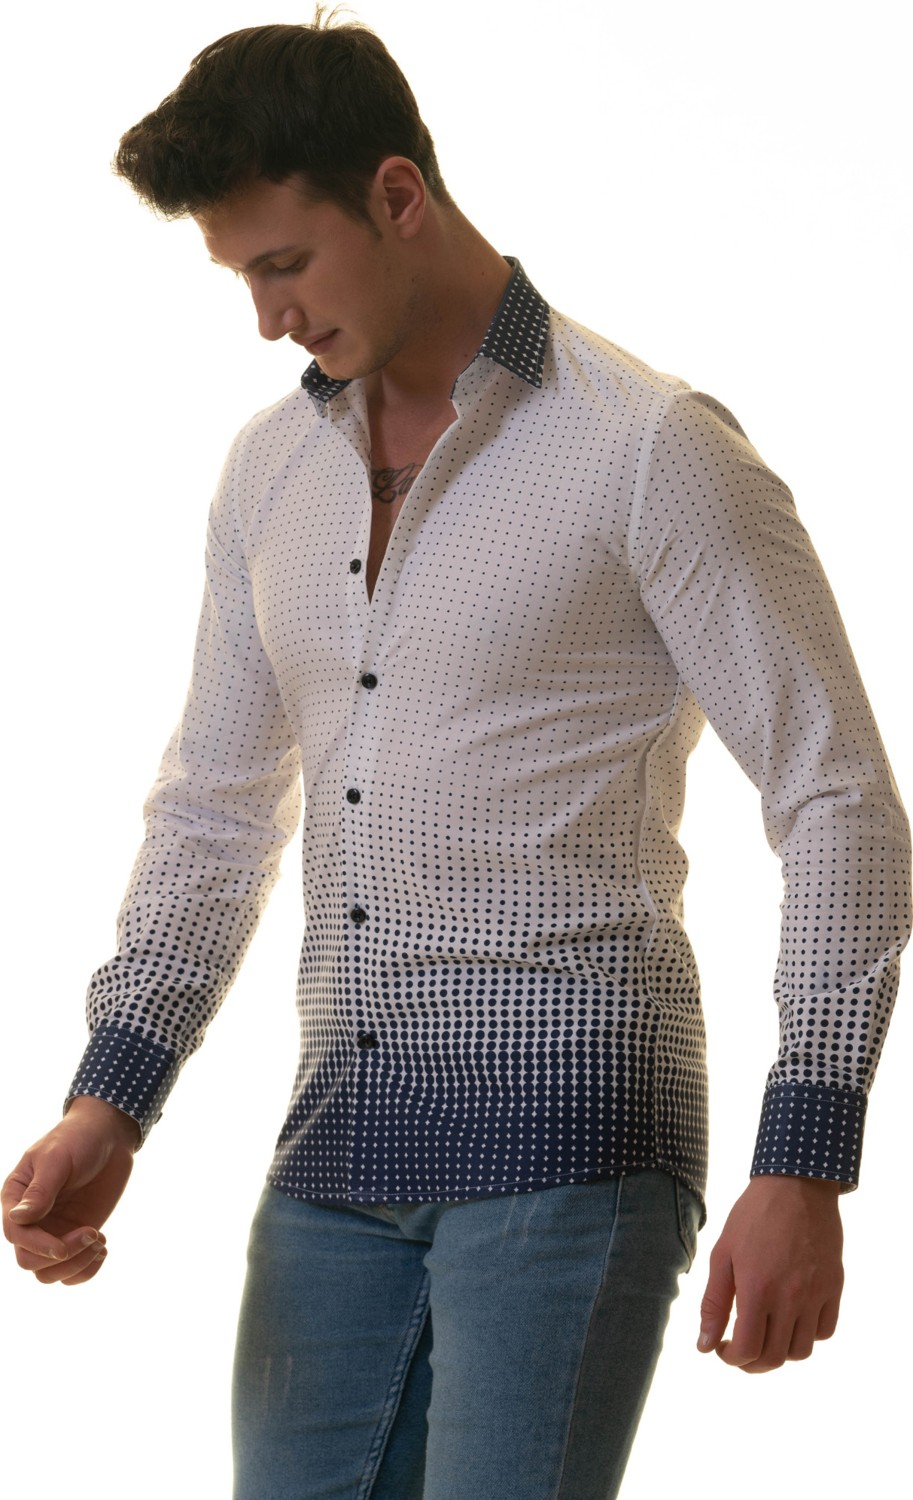 Эксклюзивная рубашка Exve белая с голубыми полосками в горошек, специальный крой, облегающий фасон.